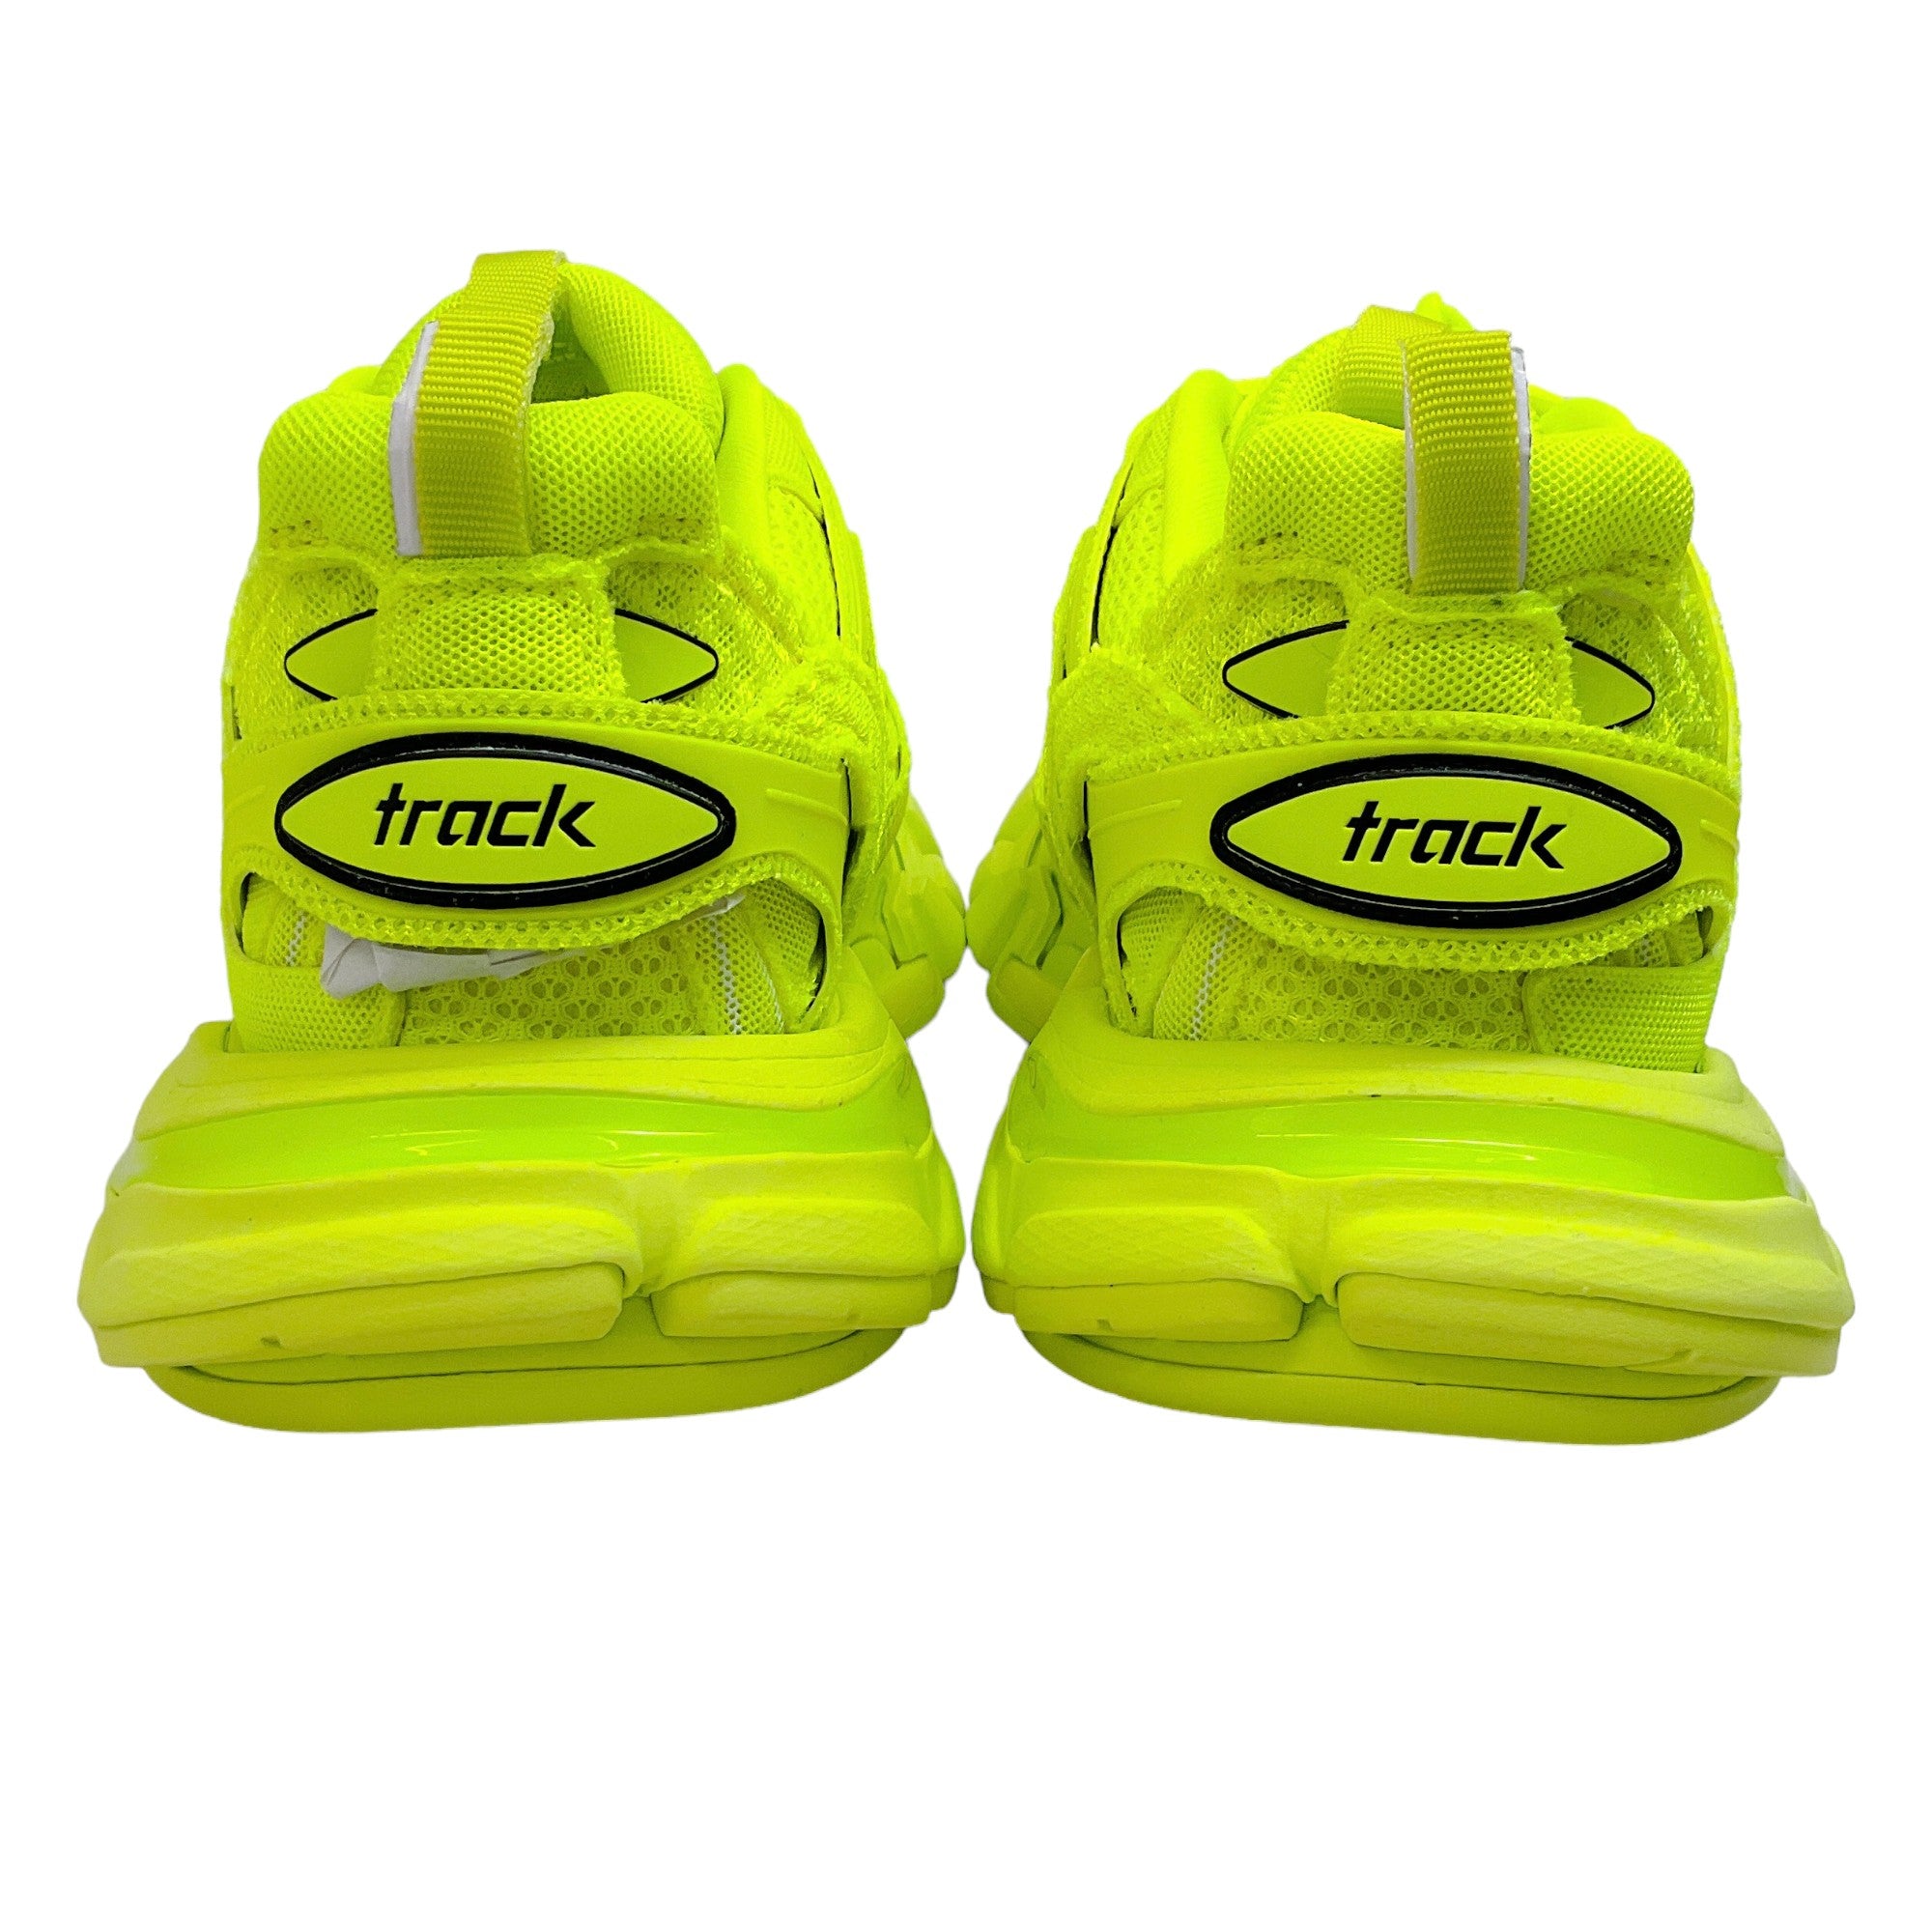 Balenciaga Neon Yellow Mesh Sneakers